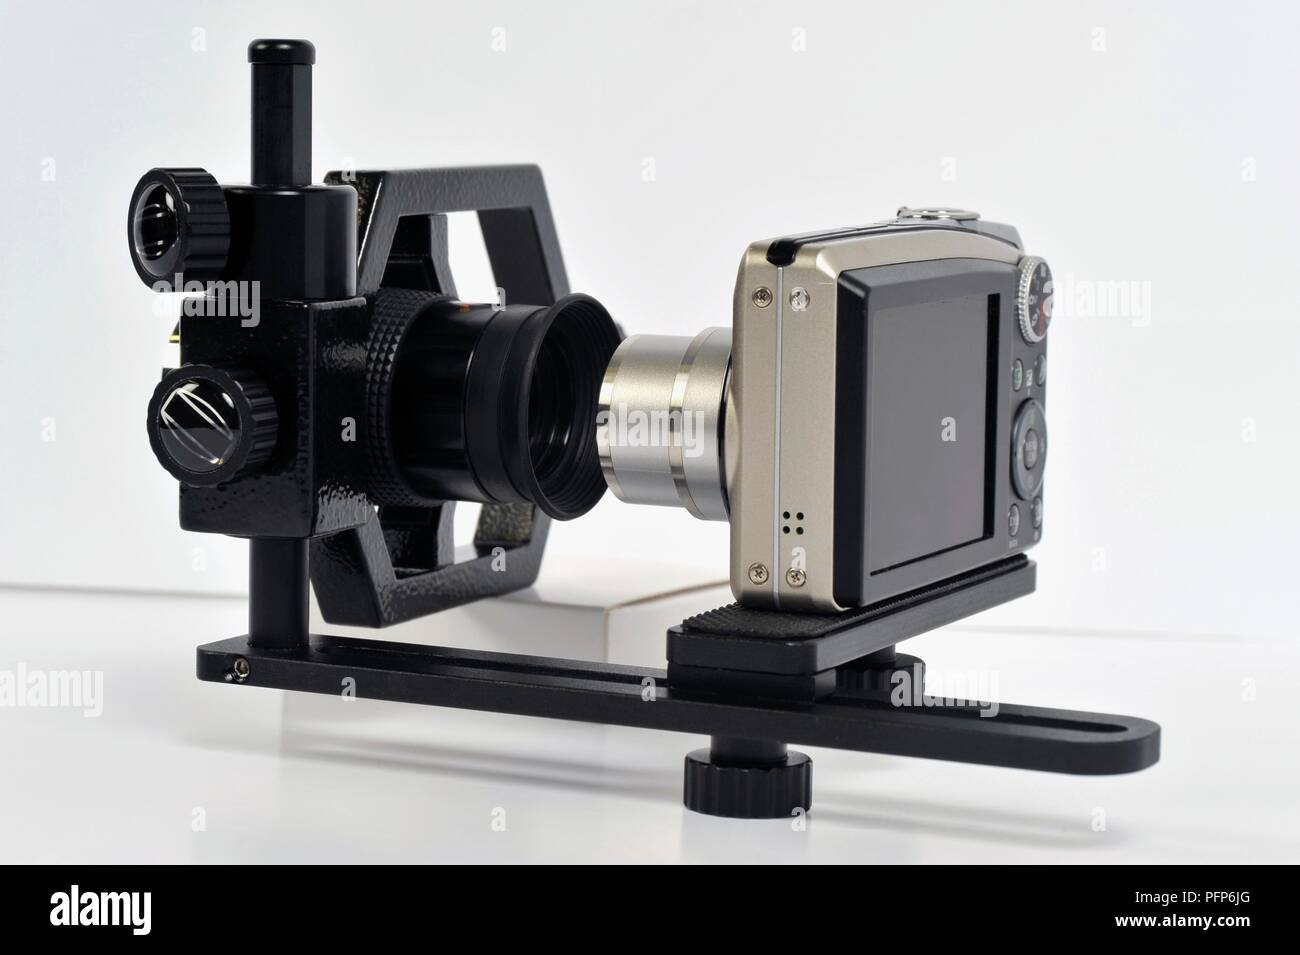 Appareil photo numérique sur support stable alignés pour oculaire de télescope Banque D'Images